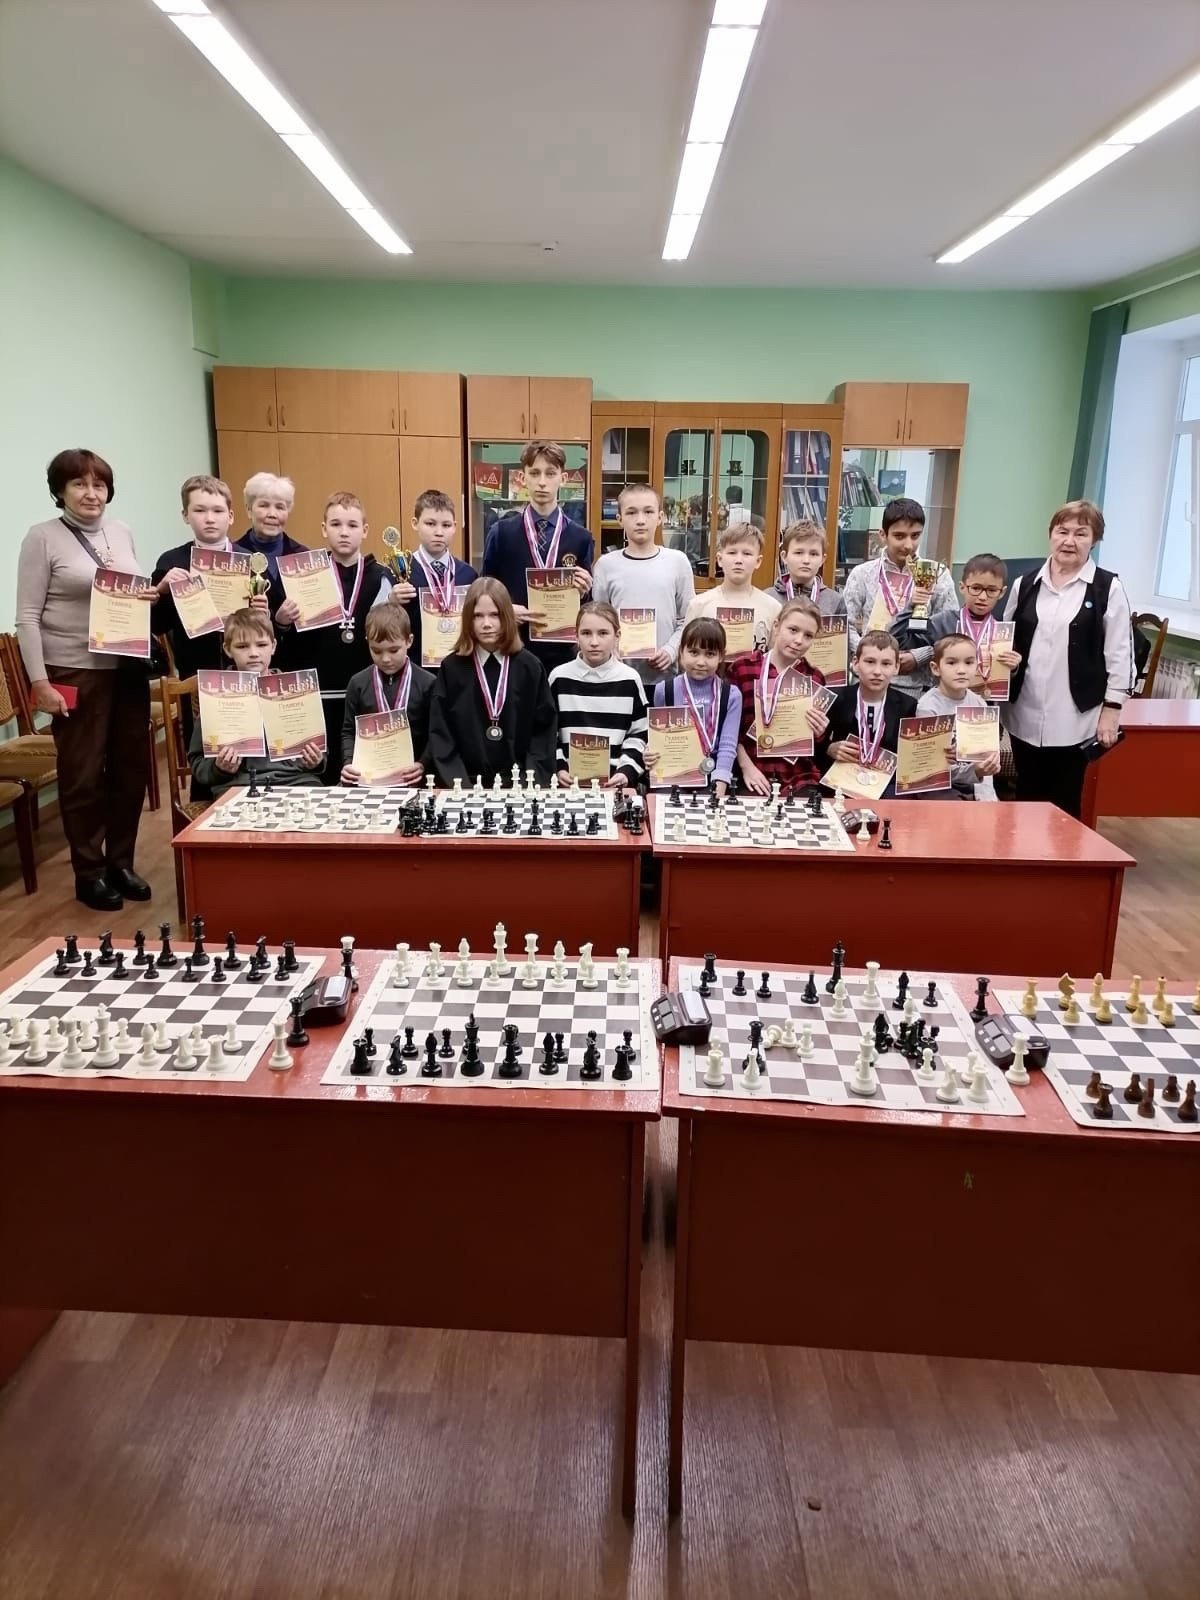 В Звенигово прошёл муниципальный этап Всероссийского шахматного турнира "Белая ладья"